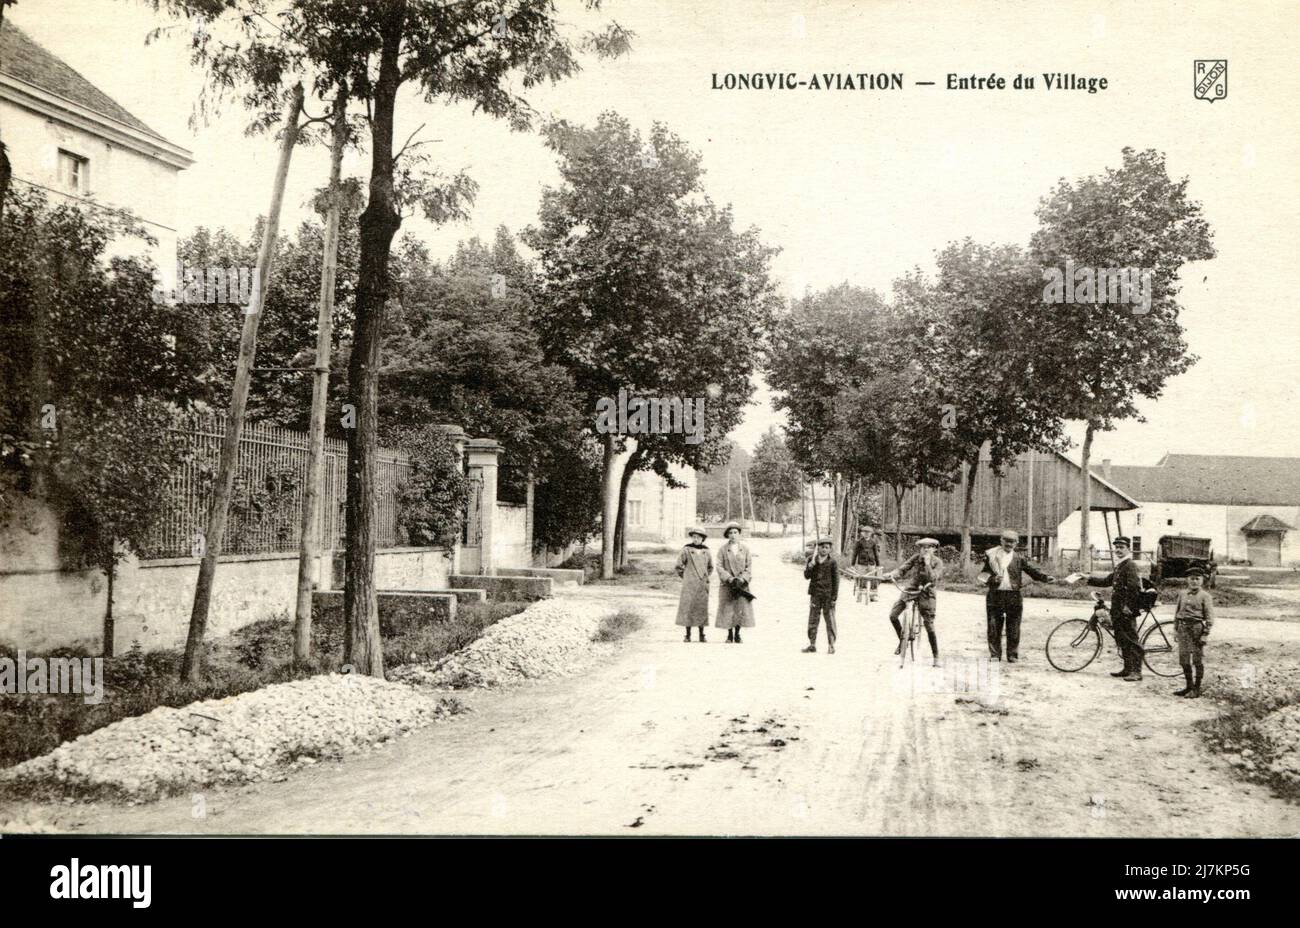 Longvic Dipartimento: 21 - Côte d'Or Regione: Bourgogne-Franche-Comté (ex Bourgogne) cartolina d'epoca, fine 19th - inizio 20th secolo Foto Stock